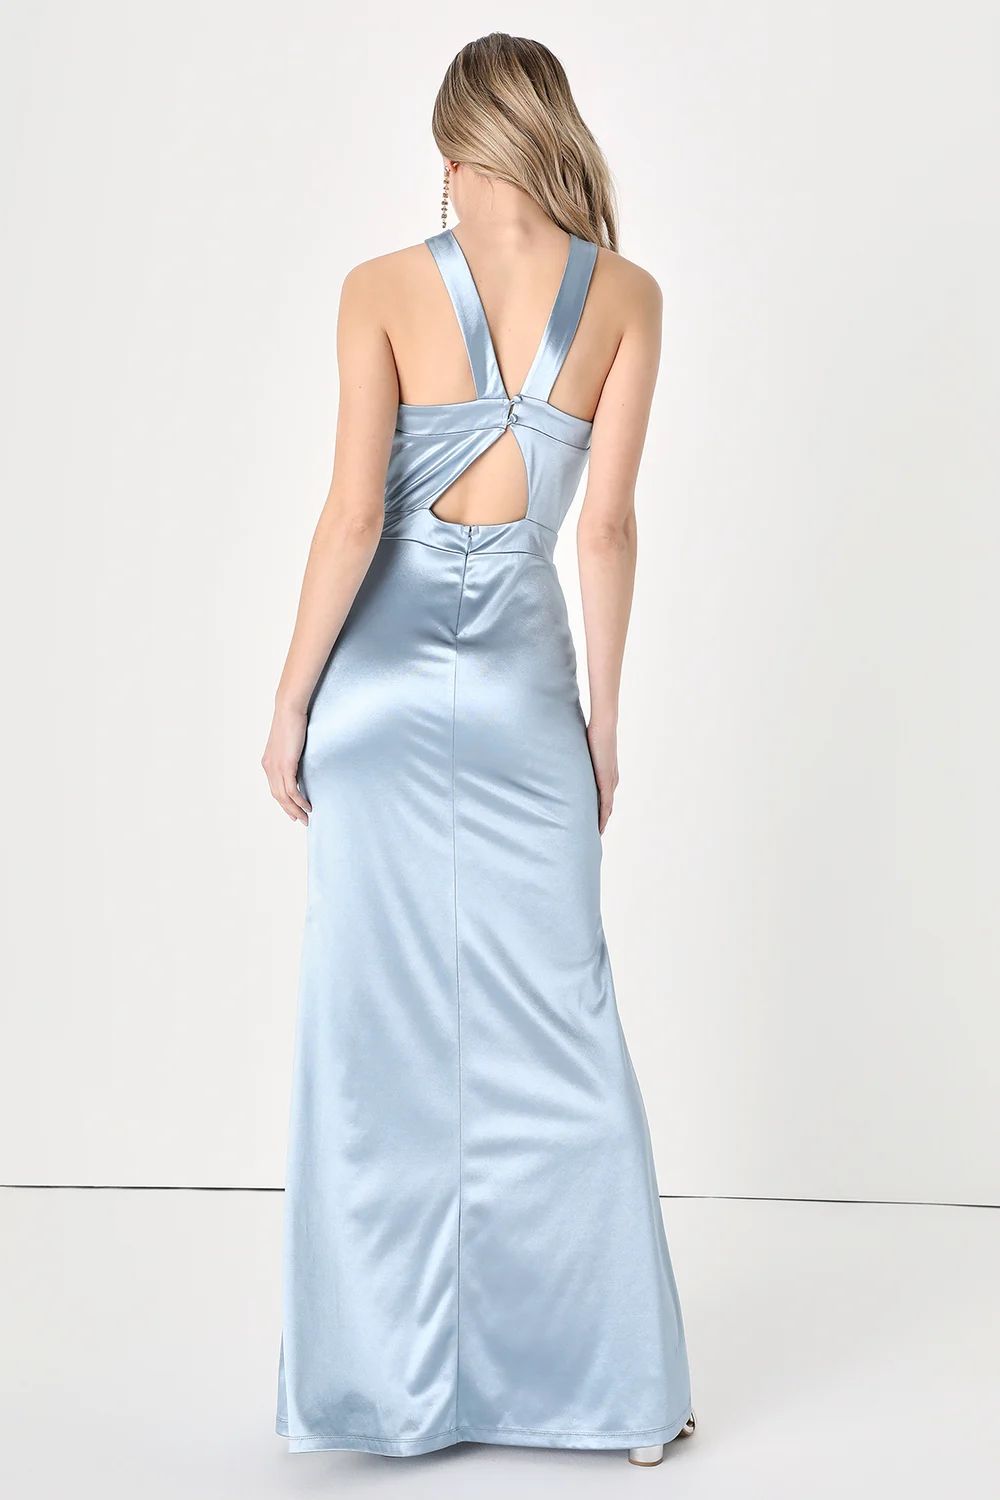 Extravagant Feelings Light Blue Satin Halter Maxi Dress | Lulus (US)